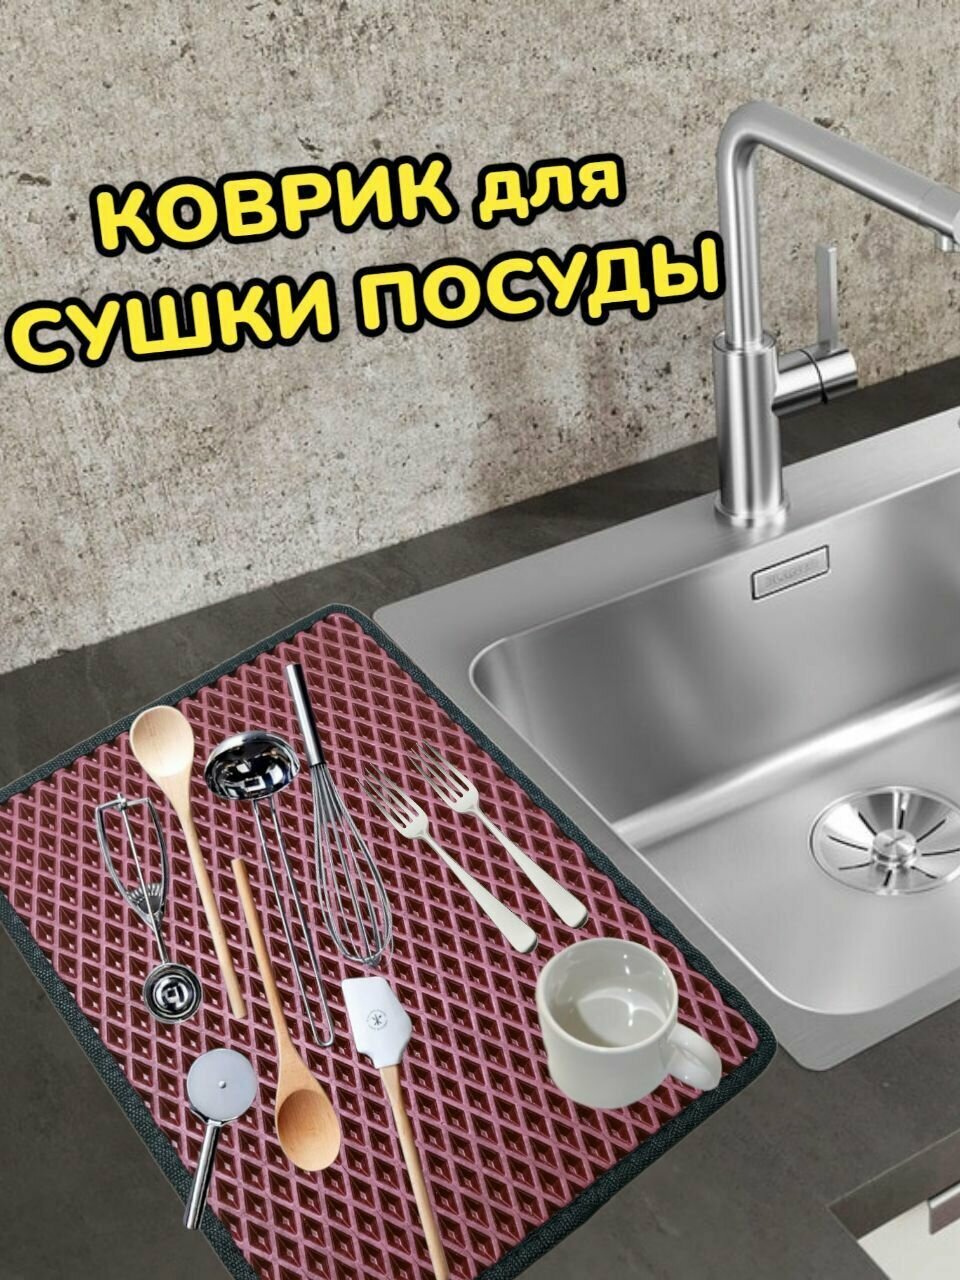 Коврик для сушки посуды / Поддон для сушилки посуды / 55 см х 30 см х 1 см / Бордовый с черным кантом